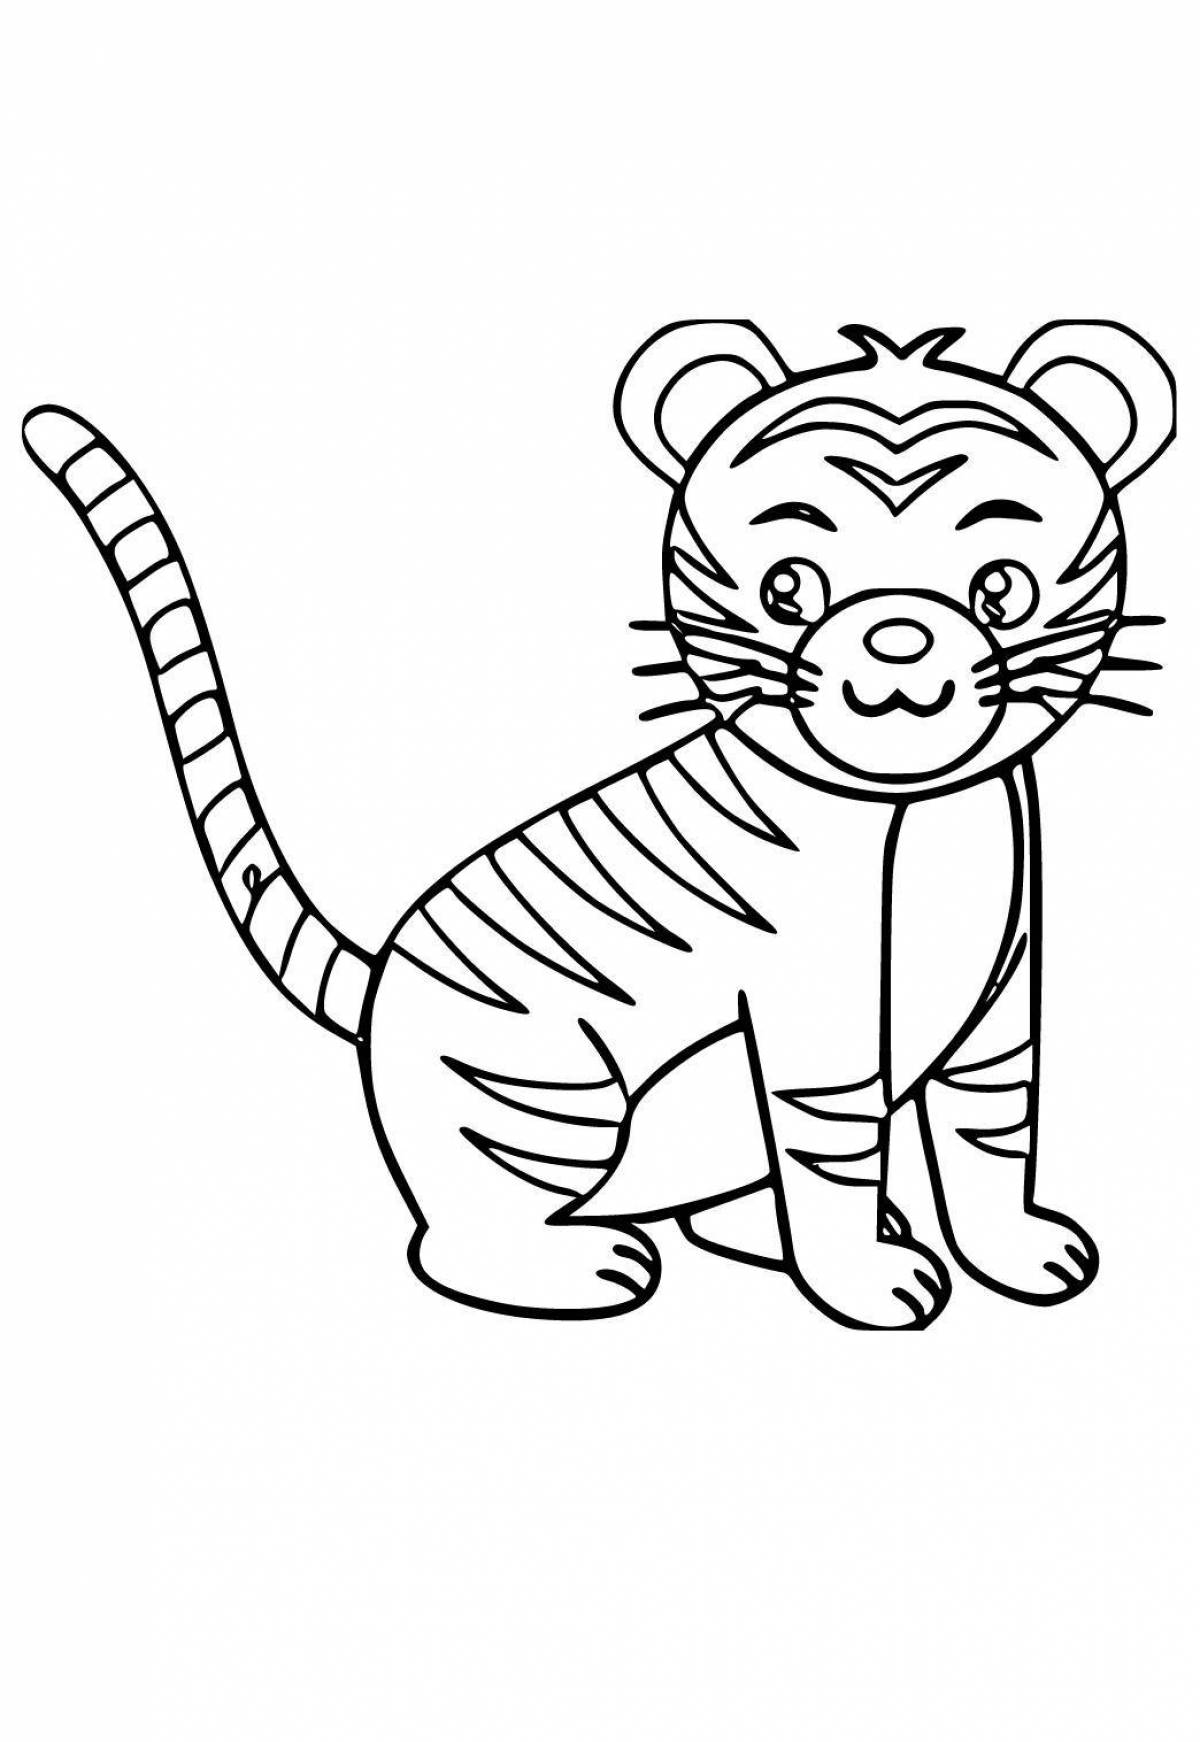 Изящная раскраска тигр для детей 6-7 лет